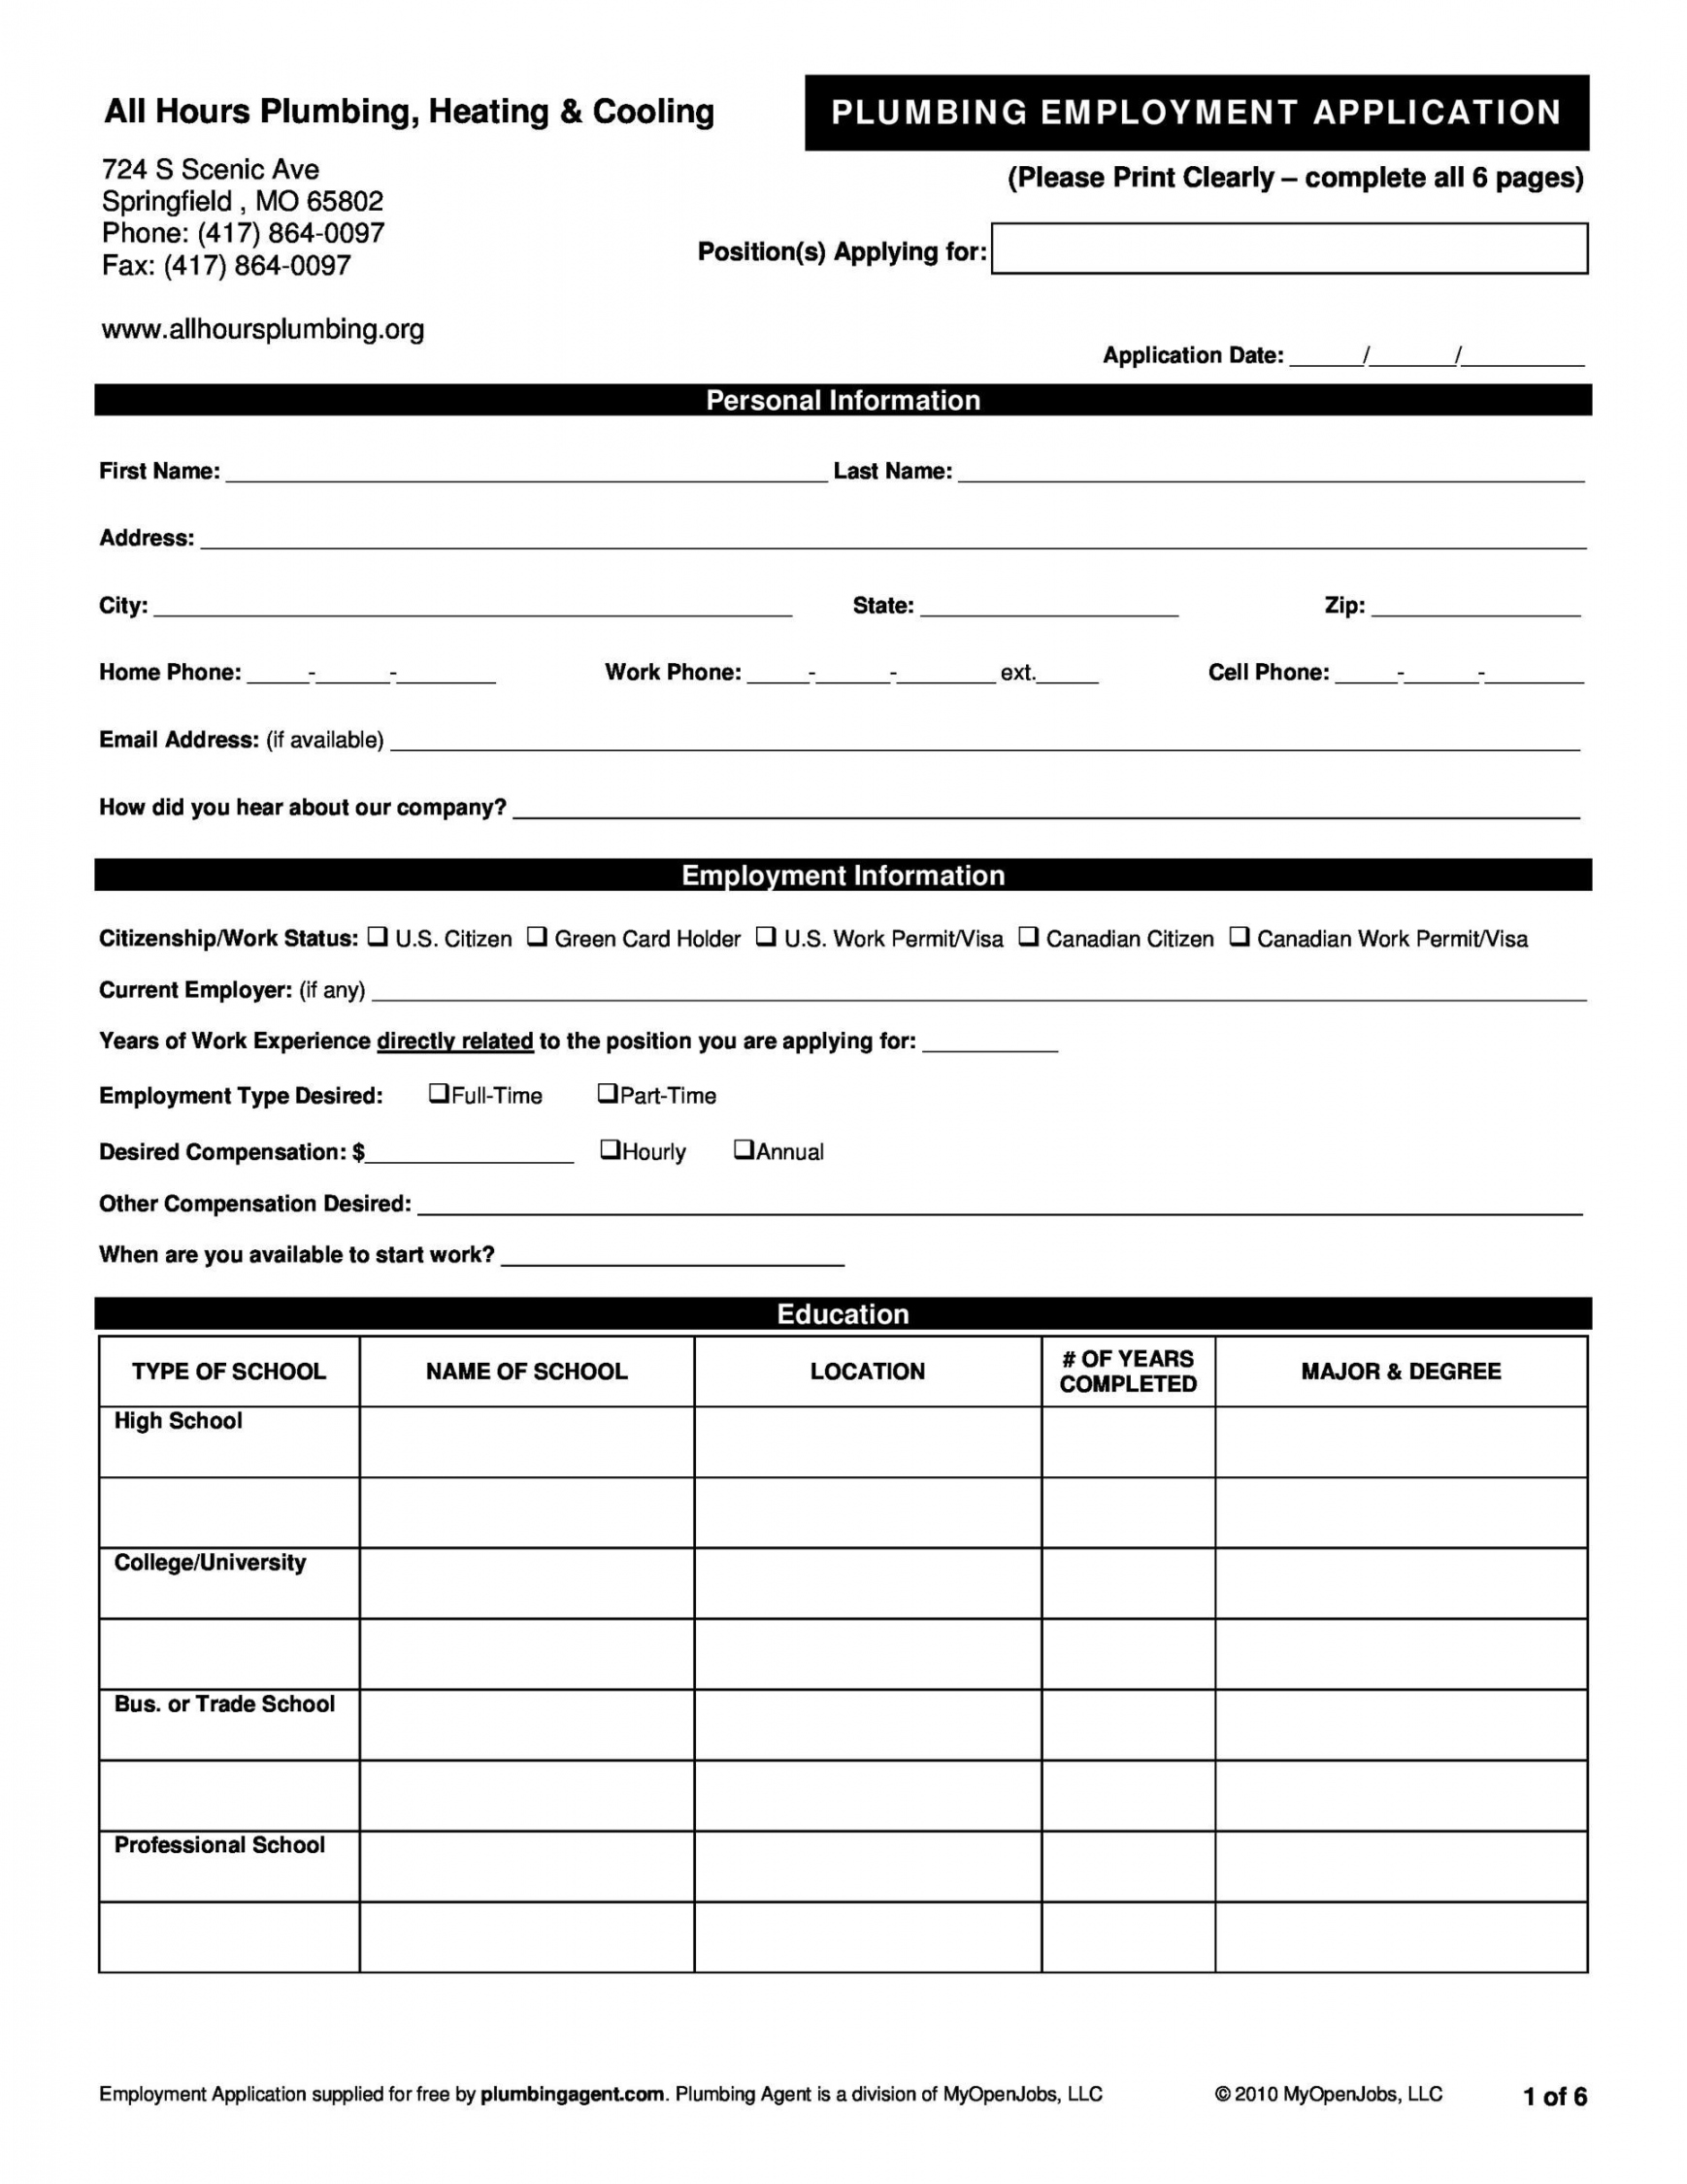 Free Job Applications Printable - Printable -  Free Employment / Job Application Form Templates [Printable] ᐅ